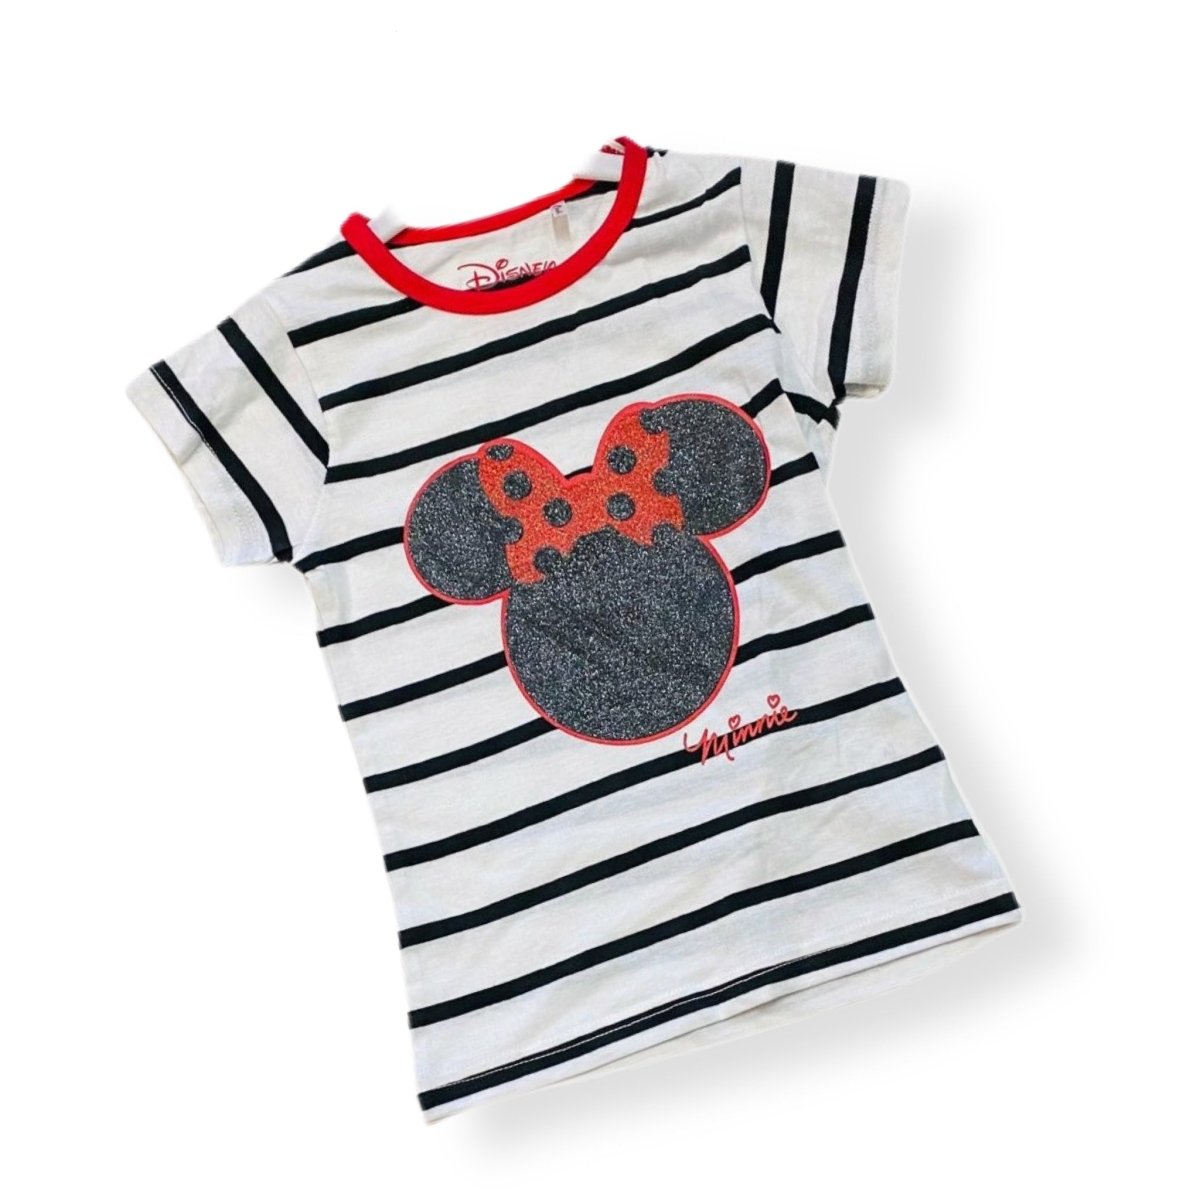 T-shirt Minnie 100% Cotone - Mstore016 - T-shirt Minnie - Disney